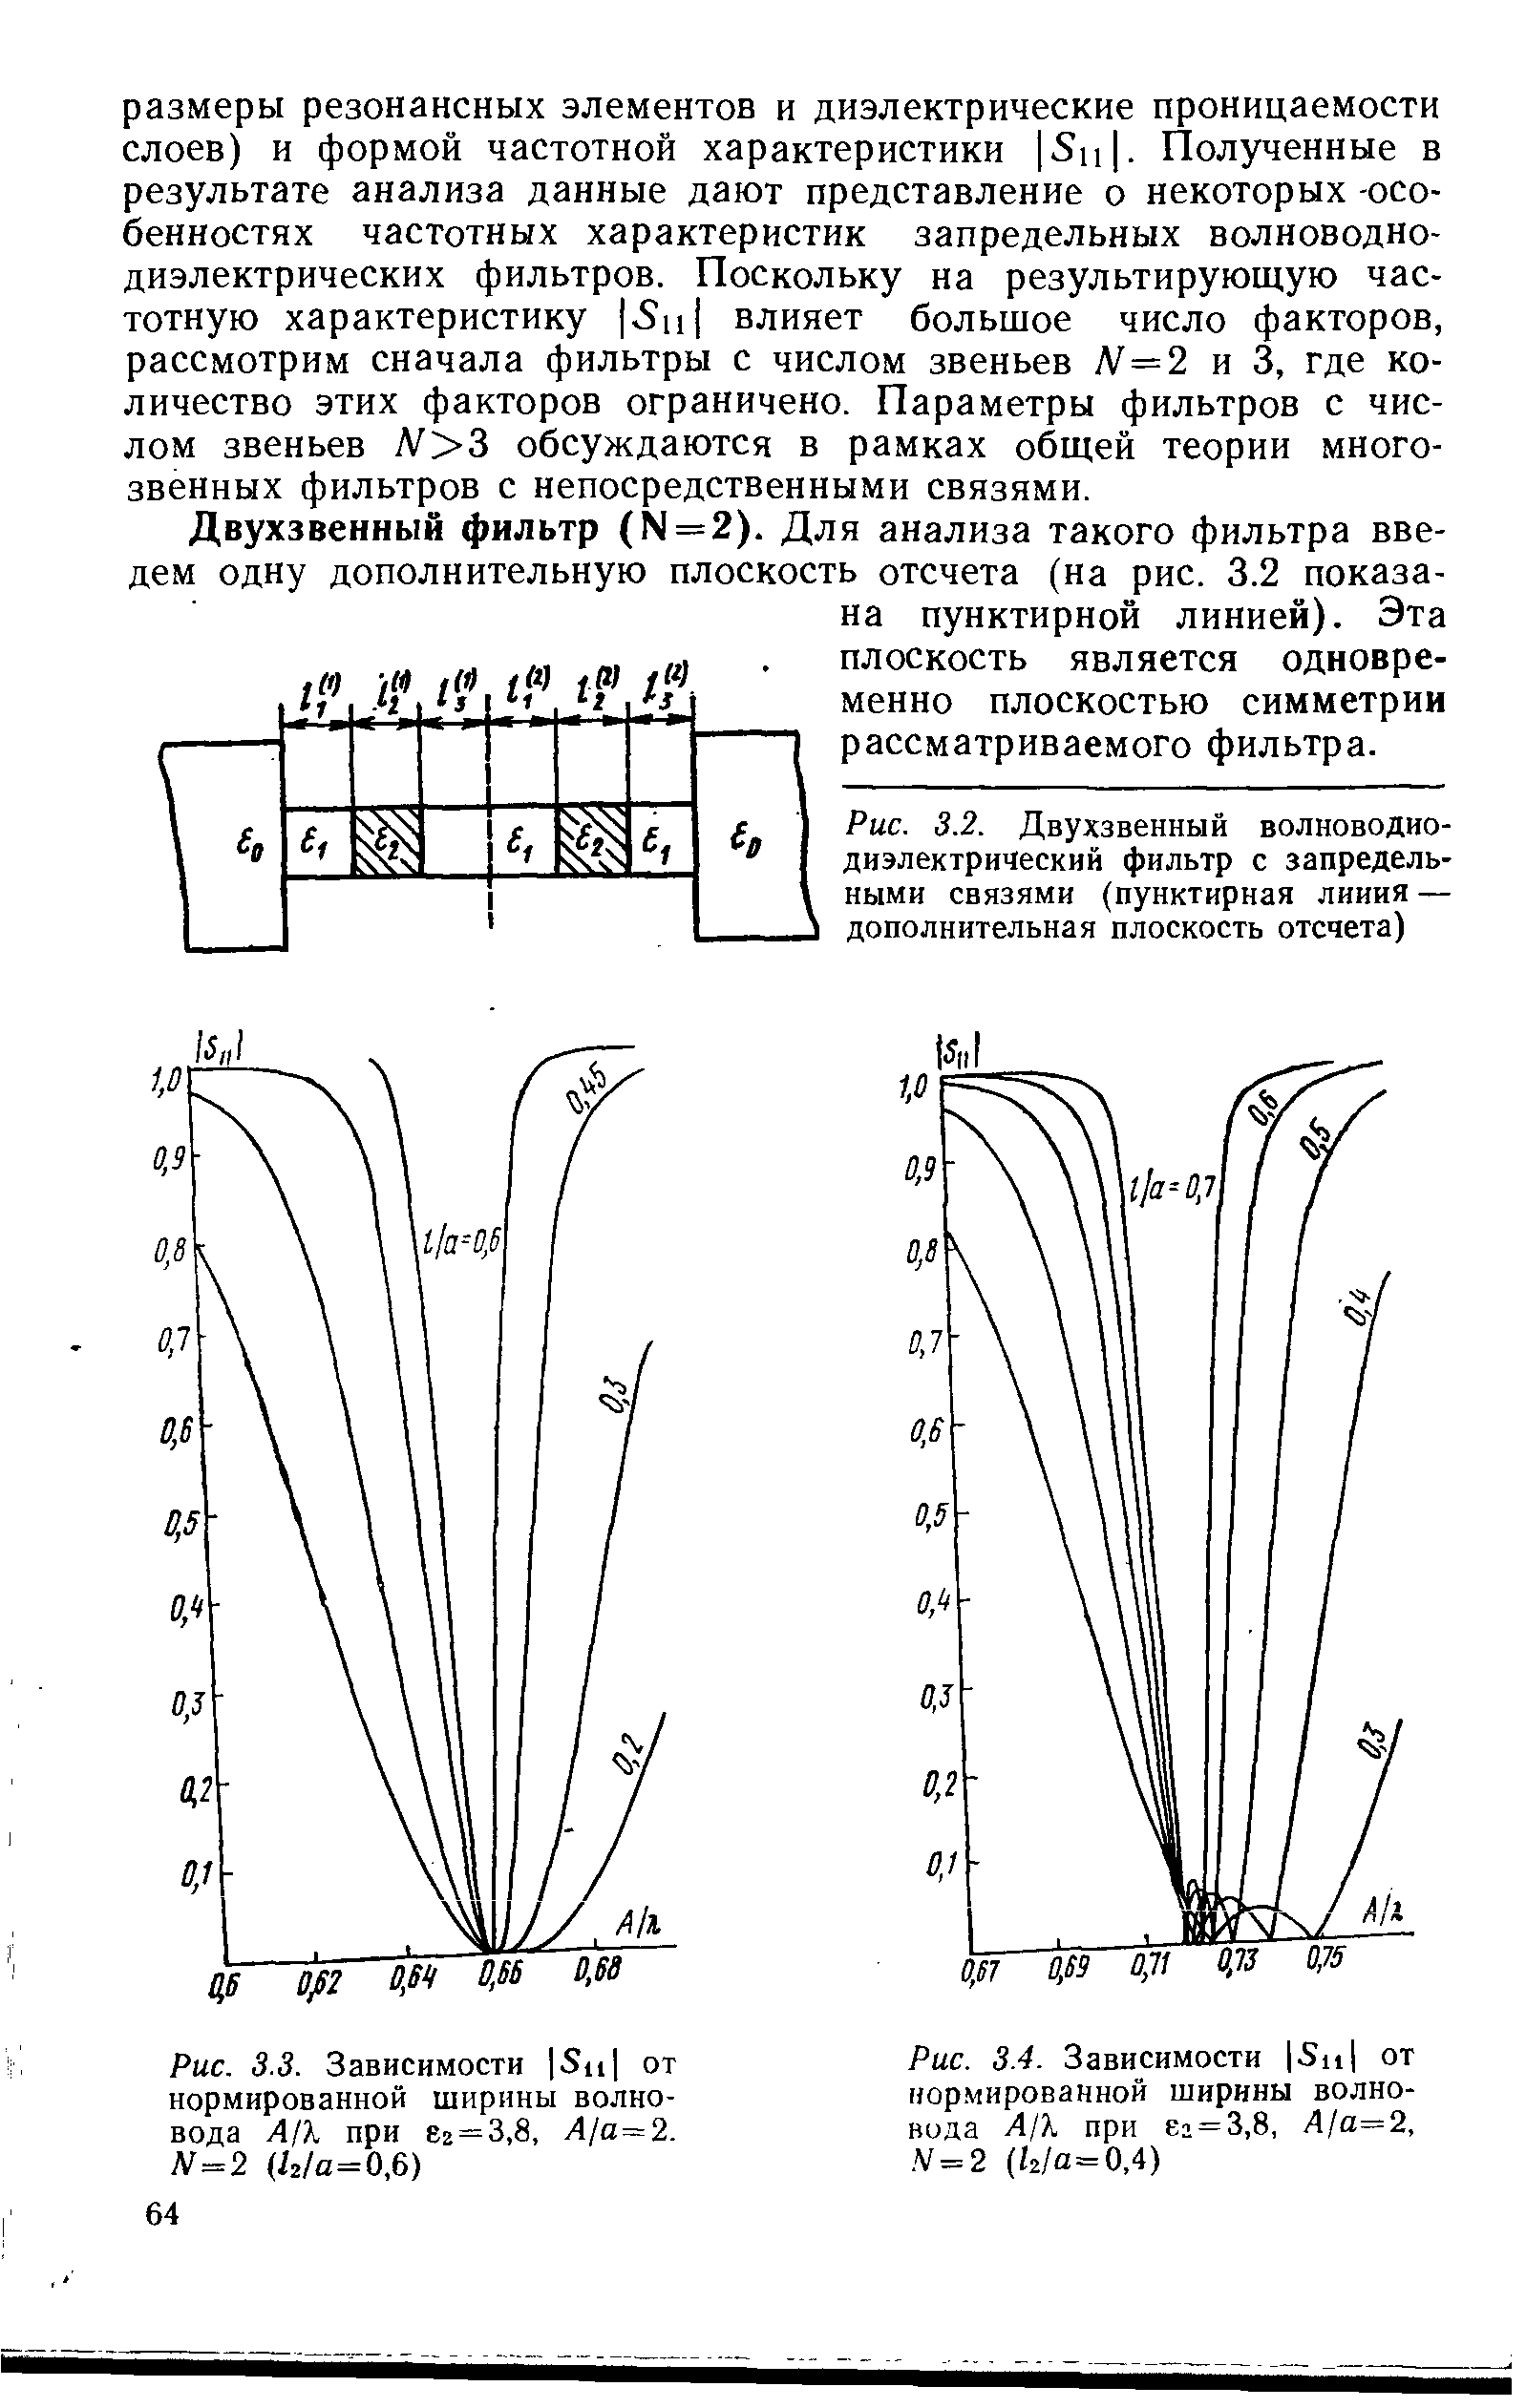 Рис. 3.2. Двухзвенный волноводио-диэлектрический фильтр с запредельными связями (пунктирная линия — дополнительная плоскость отсчета)
